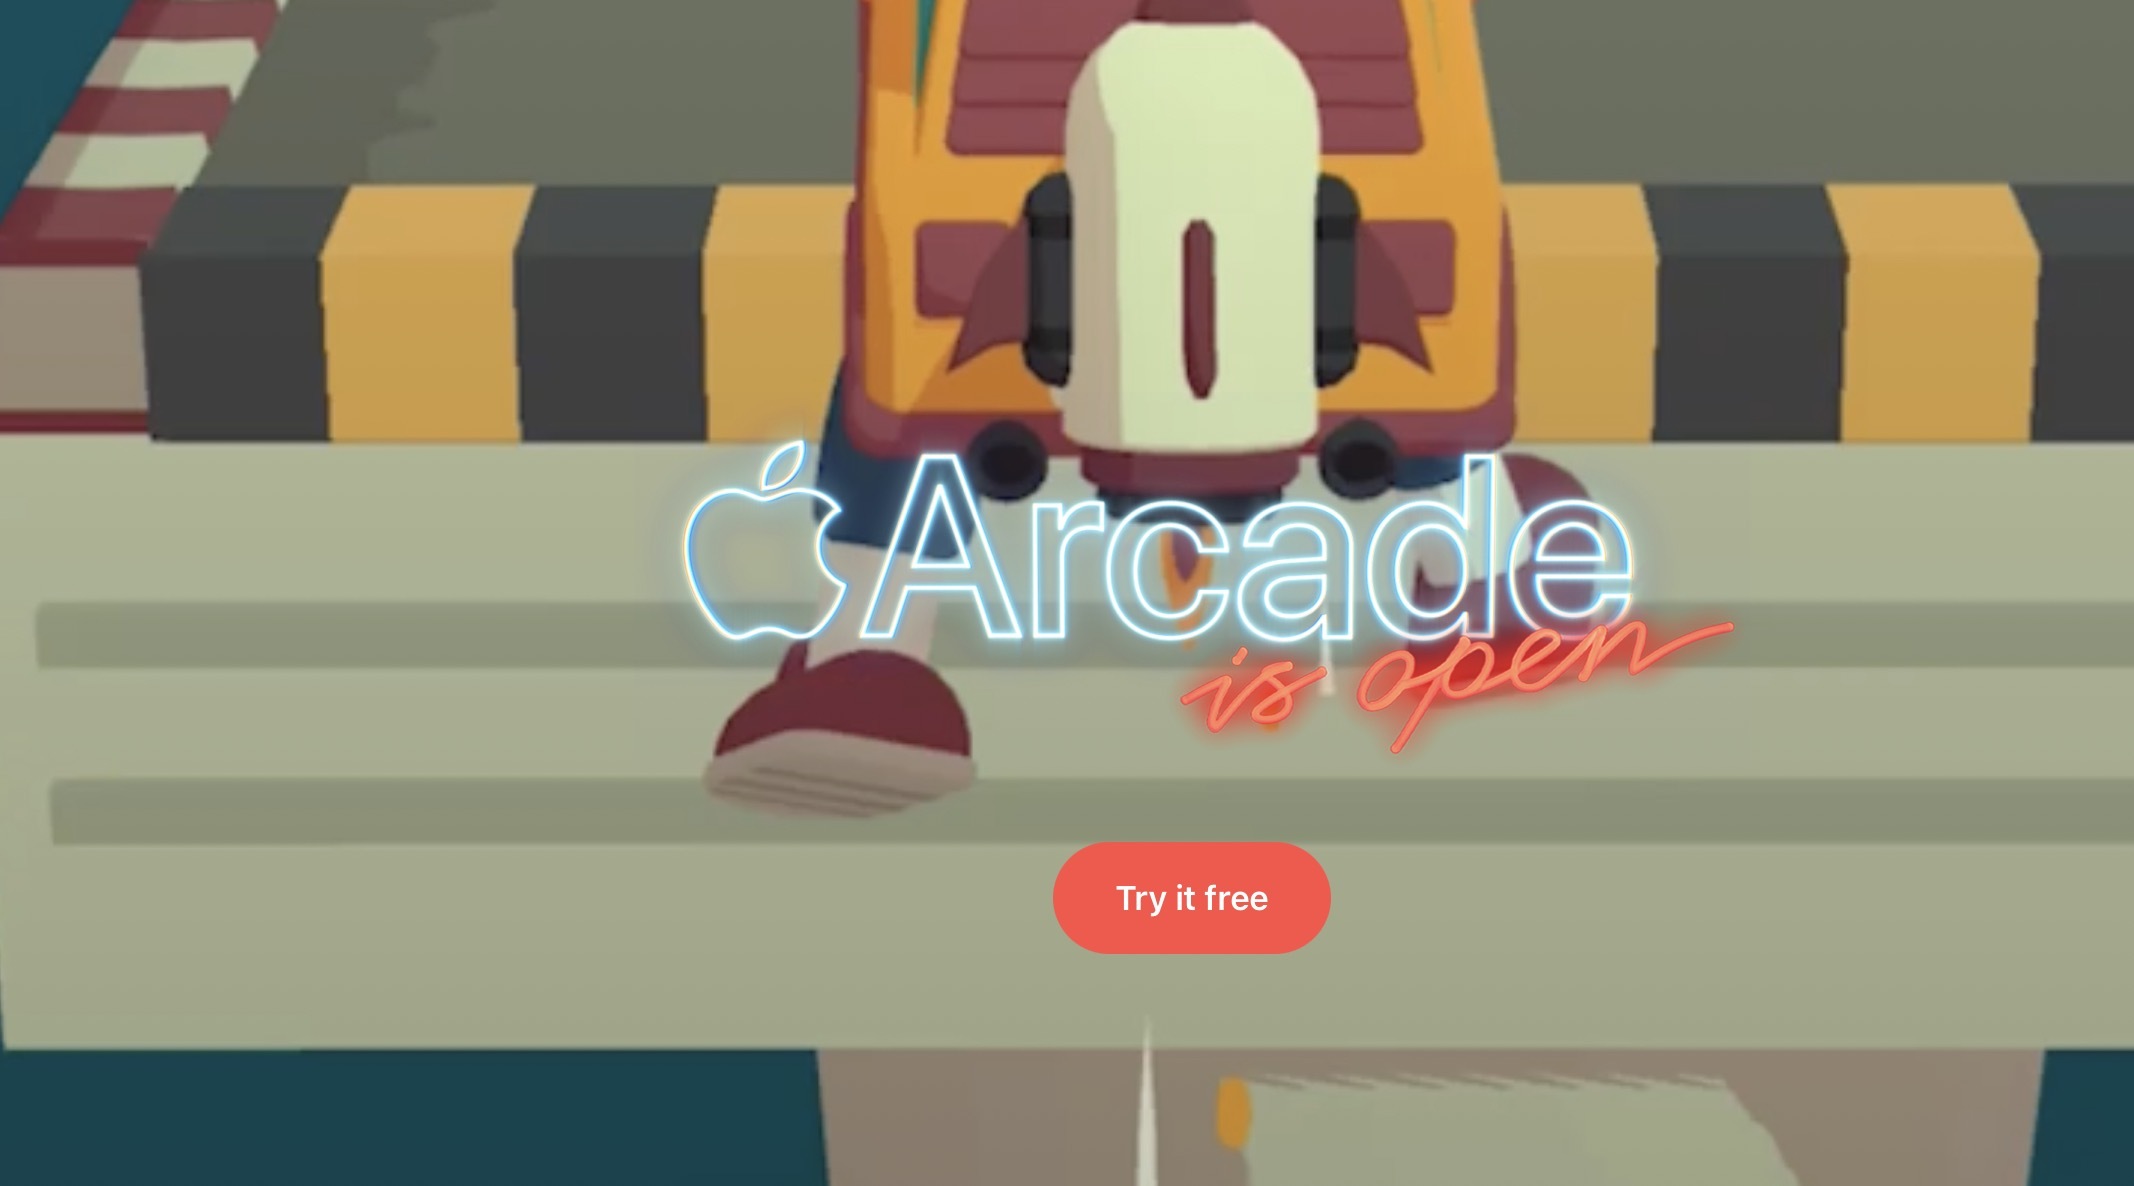 Apple Arcade догнал крупнейшие онлайн-сервисы игр по количеству пользователей